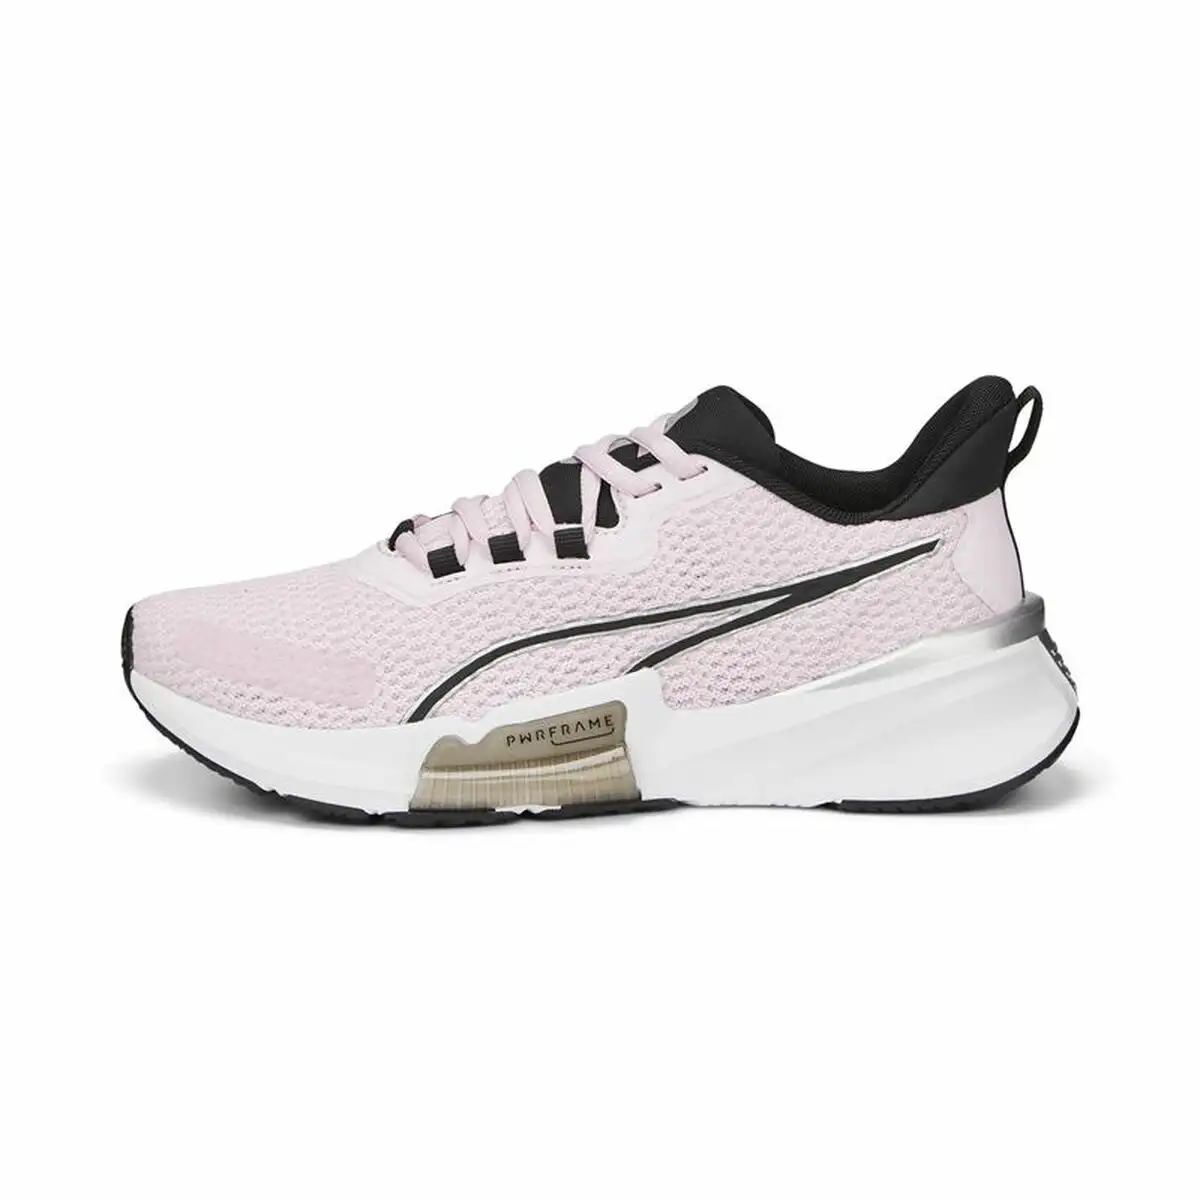 Chaussures de sport pour femme puma pwrframe tr 2 blanc rose_1537. DIAYTAR SENEGAL - Votre Destination pour un Shopping Réfléchi. Découvrez notre gamme variée et choisissez des produits qui correspondent à vos valeurs et à votre style de vie.